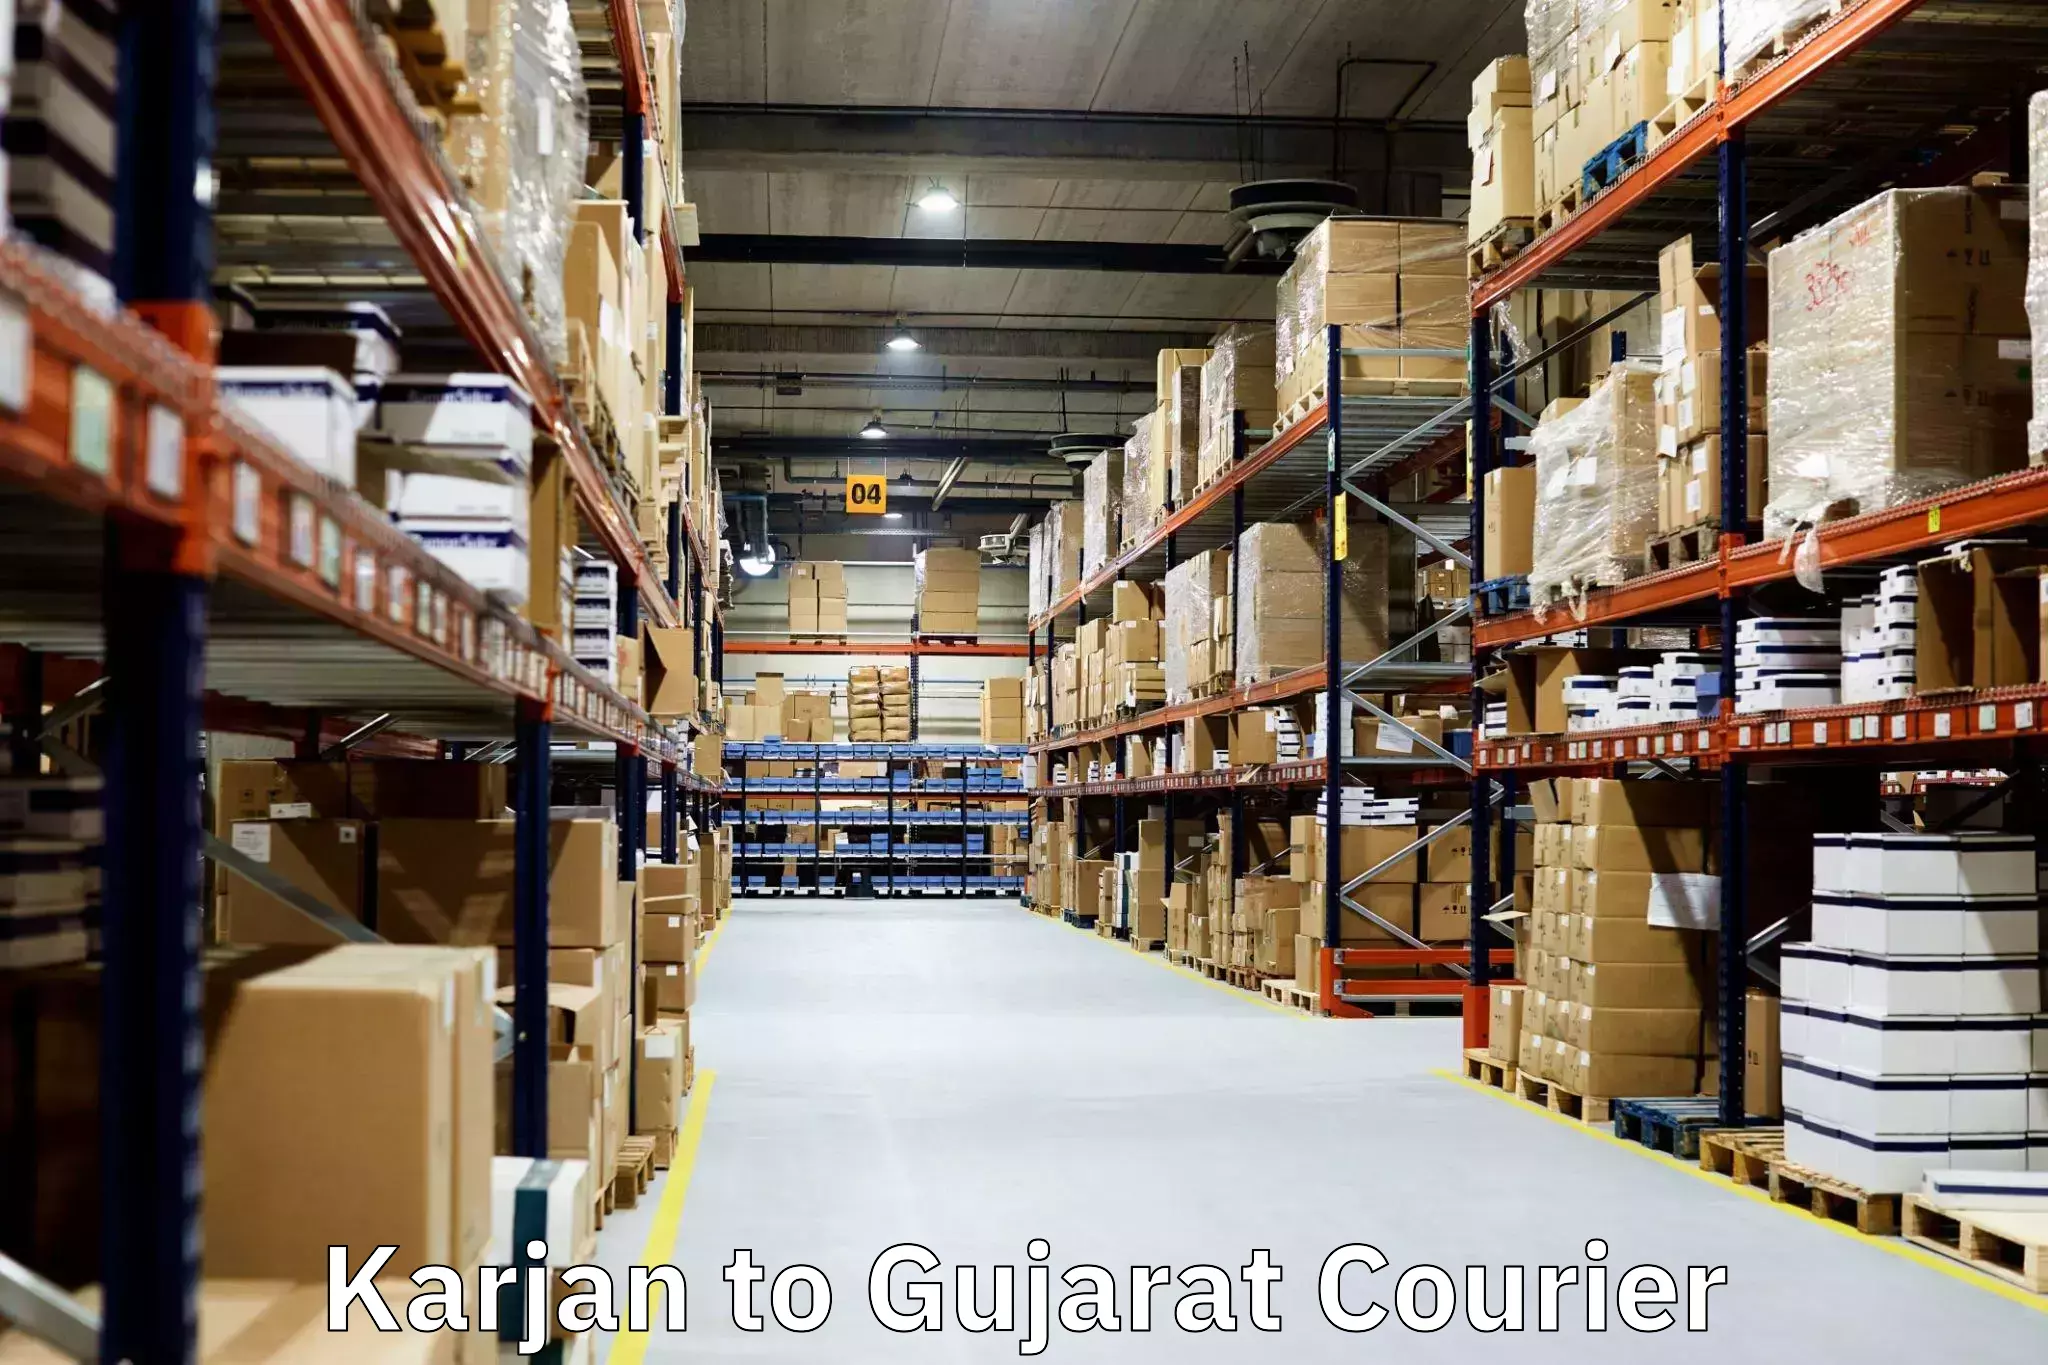 Professional packing services in Karjan to Karjan